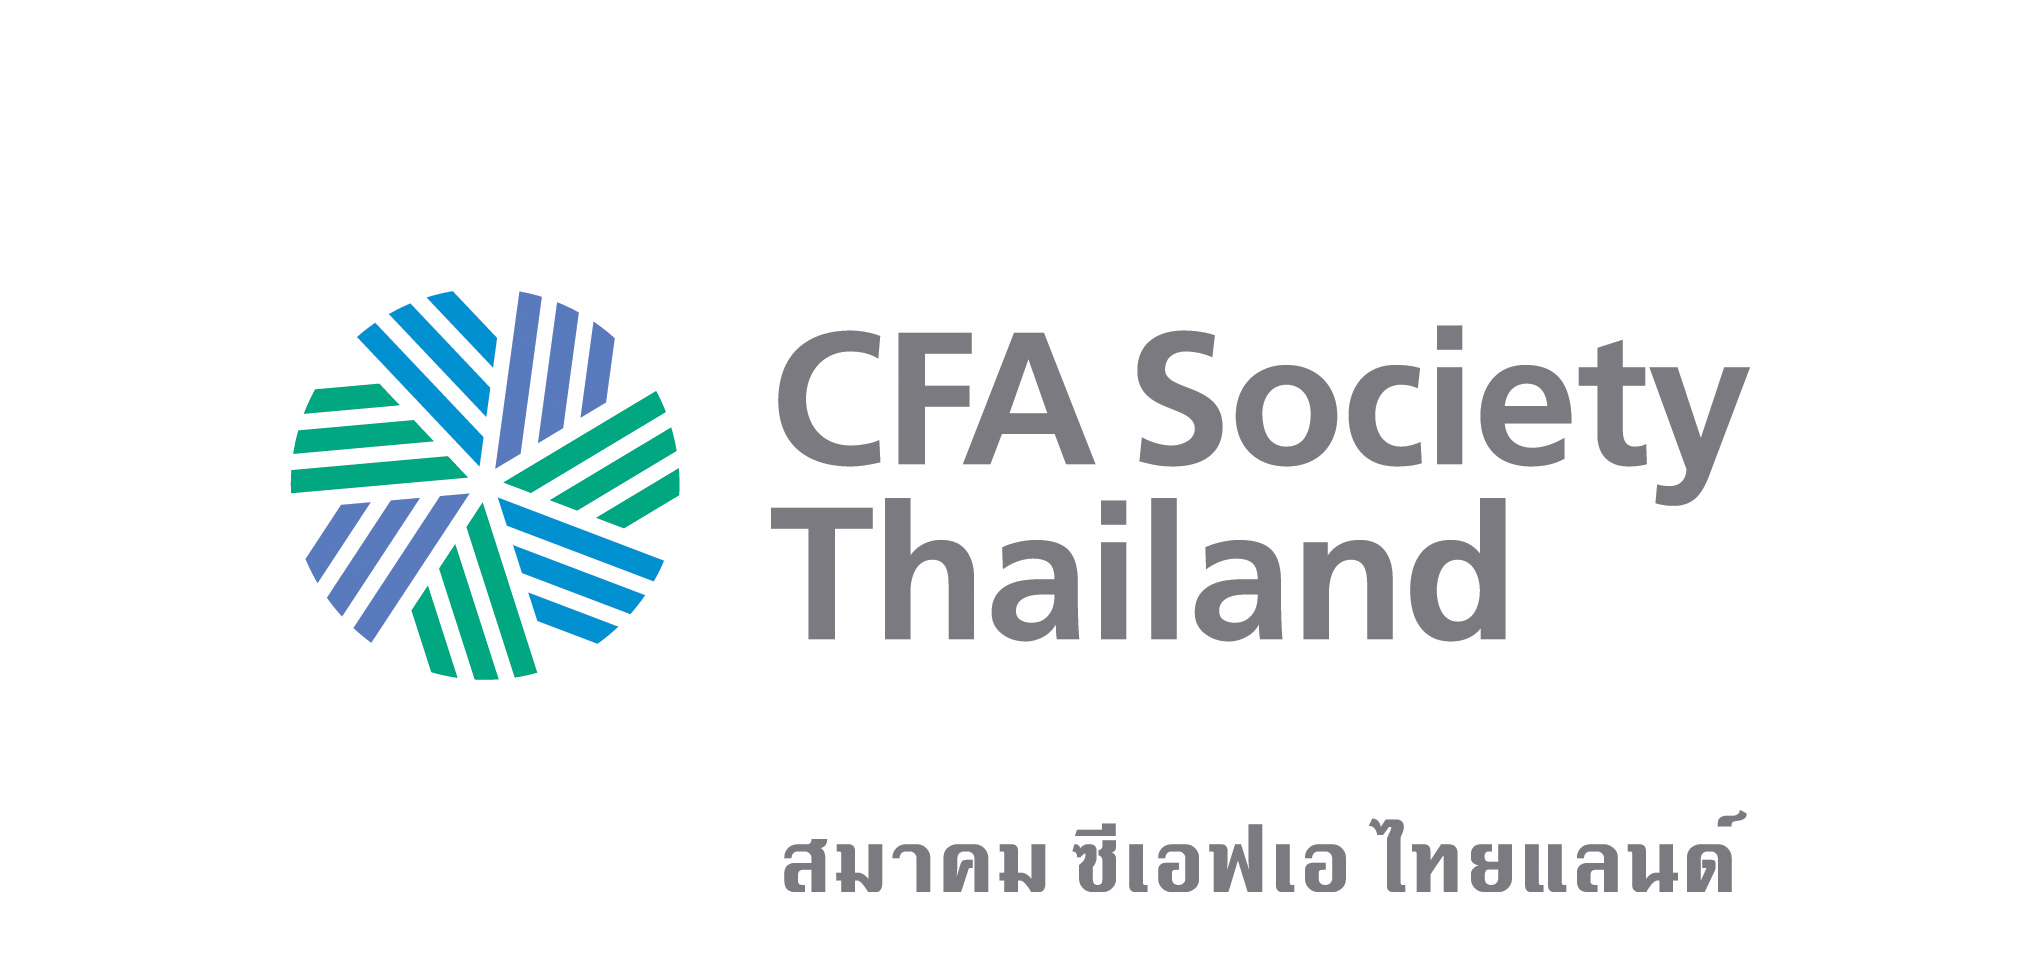 CFA Society Thailand